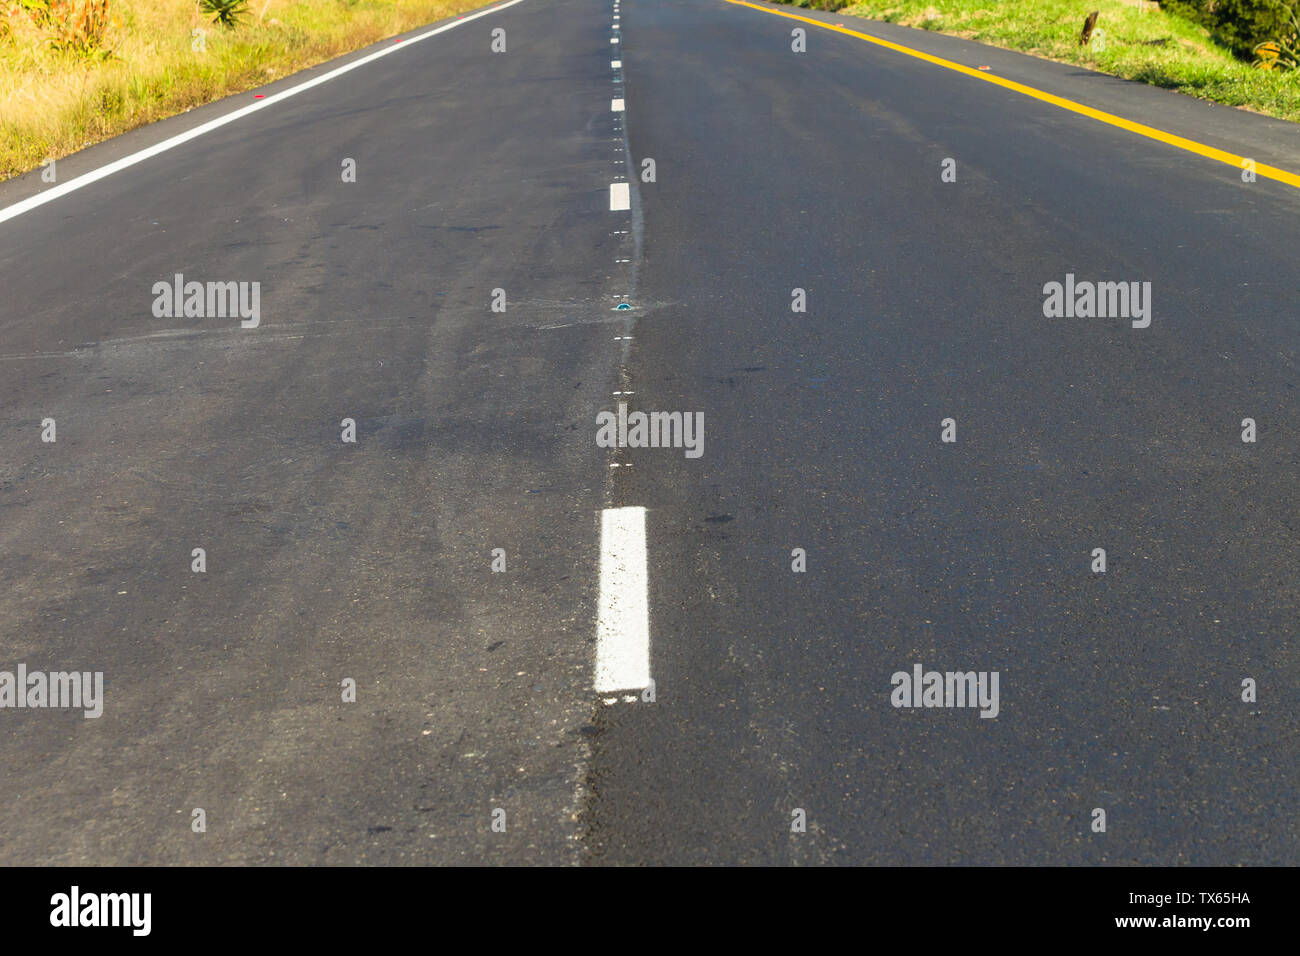 Autopista carretera de dos carriles nuevo asfalto y líneas pintadas recto sin vehículos disminuyendo la perspectiva. Foto de stock